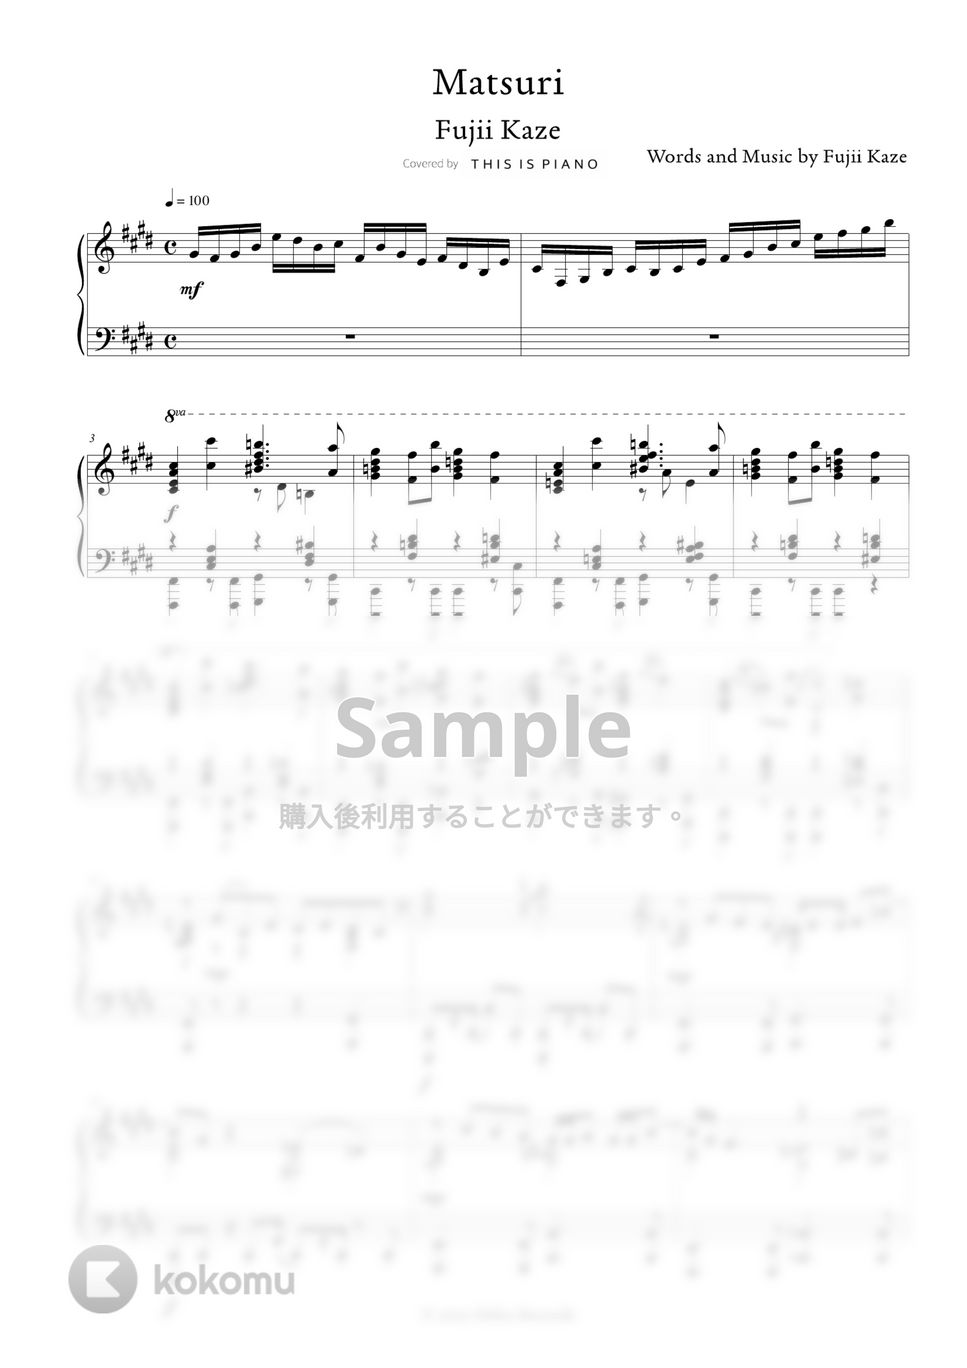 藤井風 - Matsuri by THIS IS PIANO